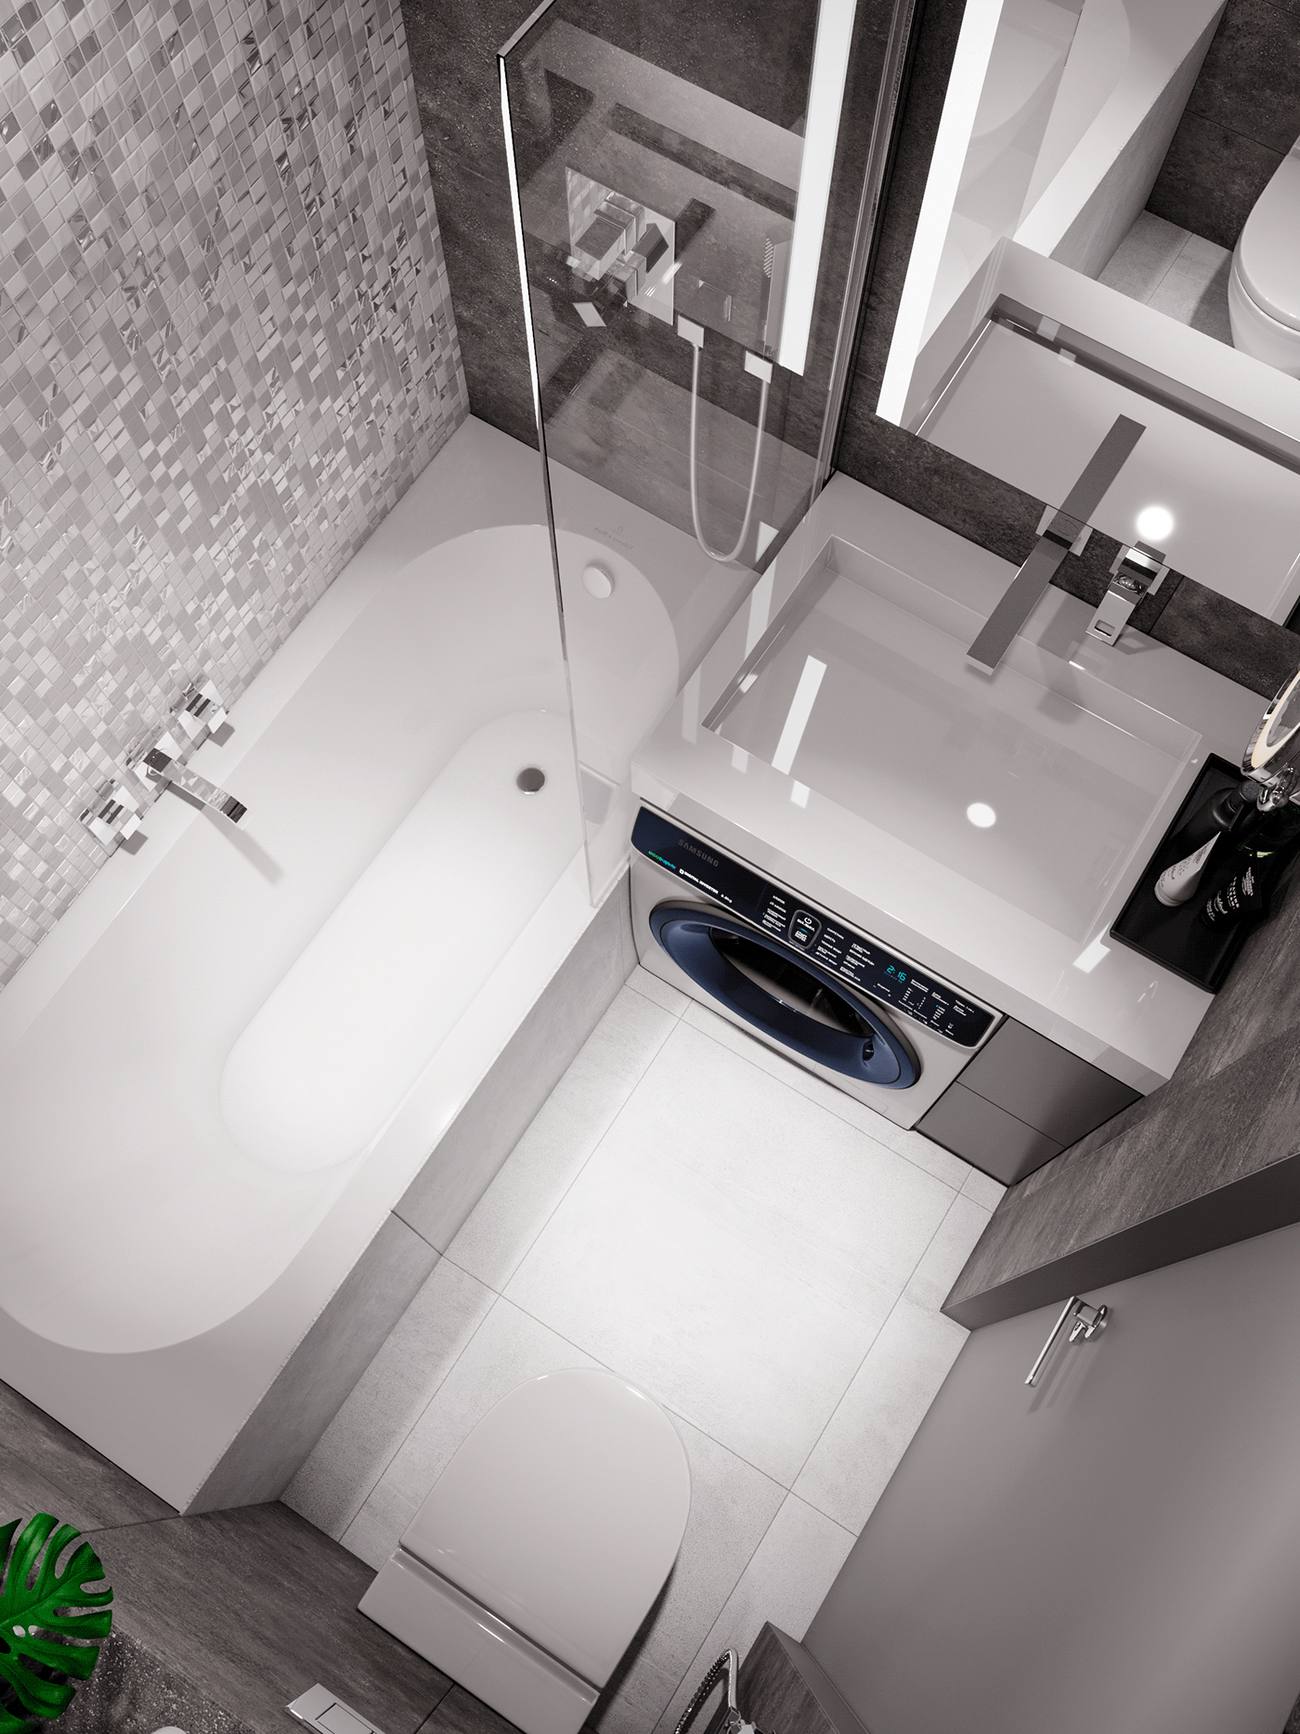 Phòng tắm, nhà vệ sinh với góc chụp từ trên cao cho thấy một không gian nhỏ nhưng vẫn gọn gàng nhờ thiết kế khoa học. Máy giặt bố trí ngay dưới bồn rửa, bên cạnh là tủ lưu trữ màu xám, tấm gương lớn phía trên tạo cảm giác không gian rộng rãi hơn.